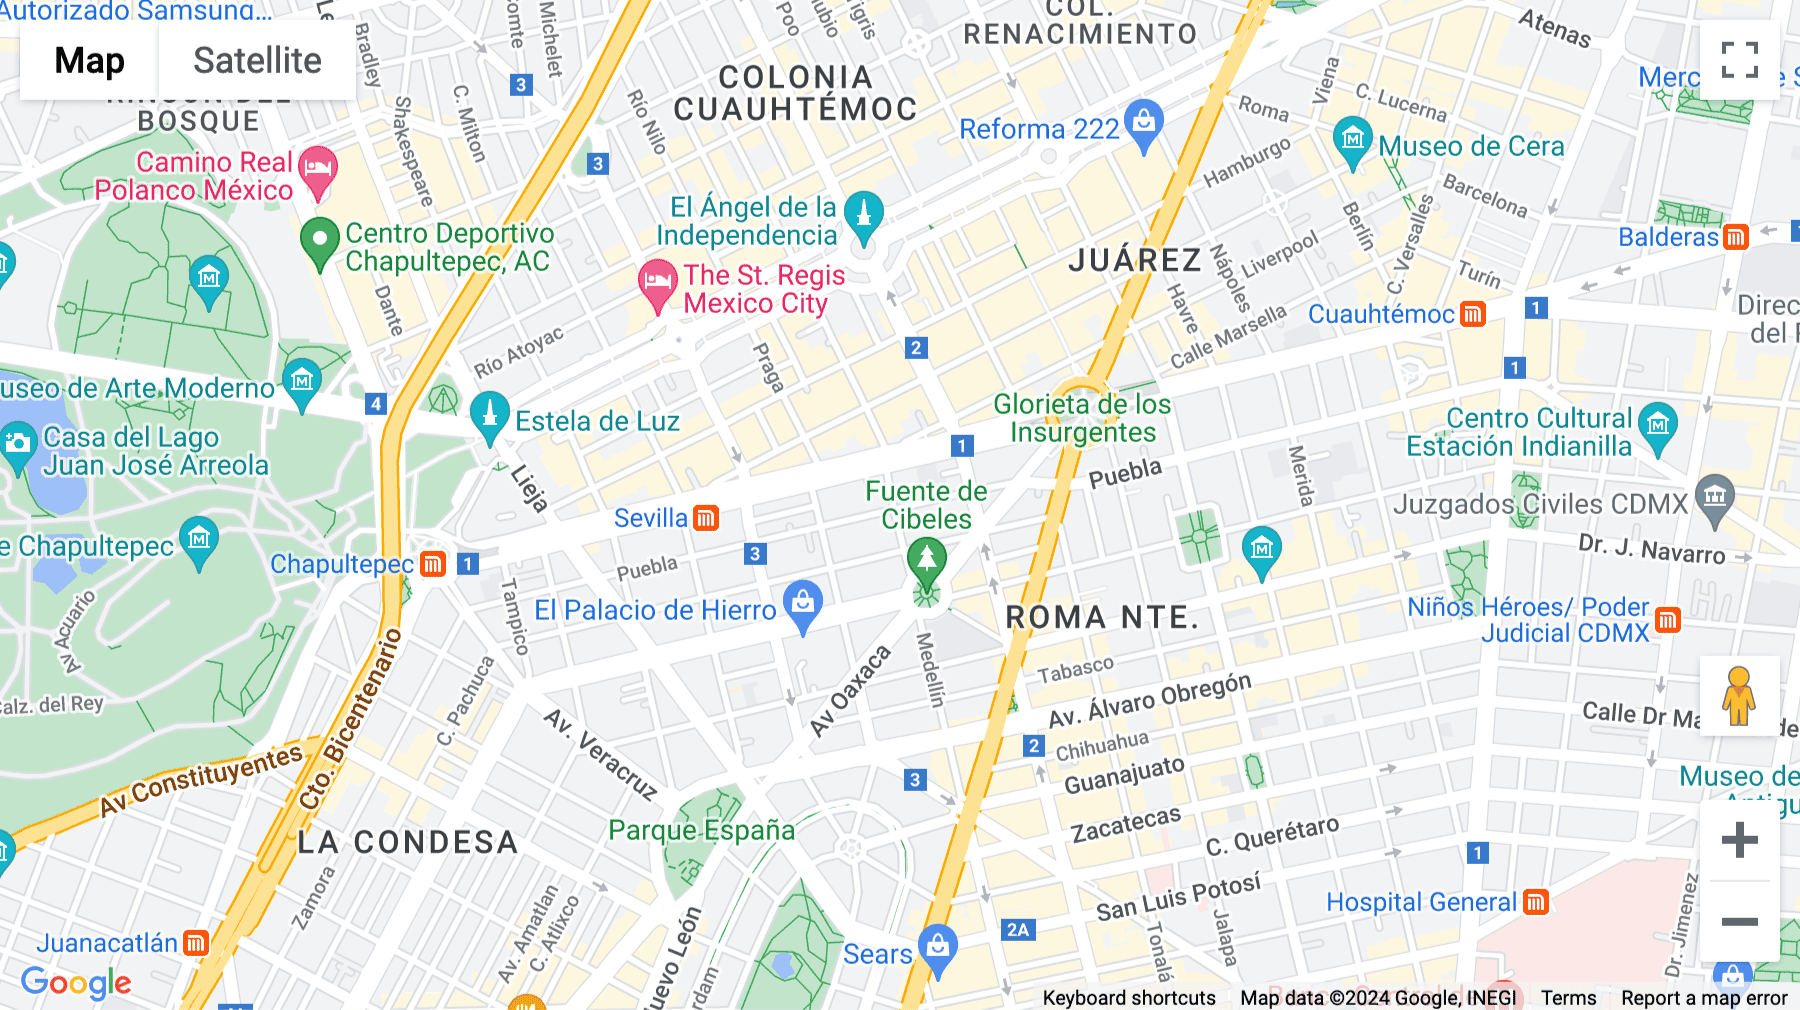 Click for interative map of Puebla 237, Roma Nte, Ciudad de México, CDMX, Mexico City